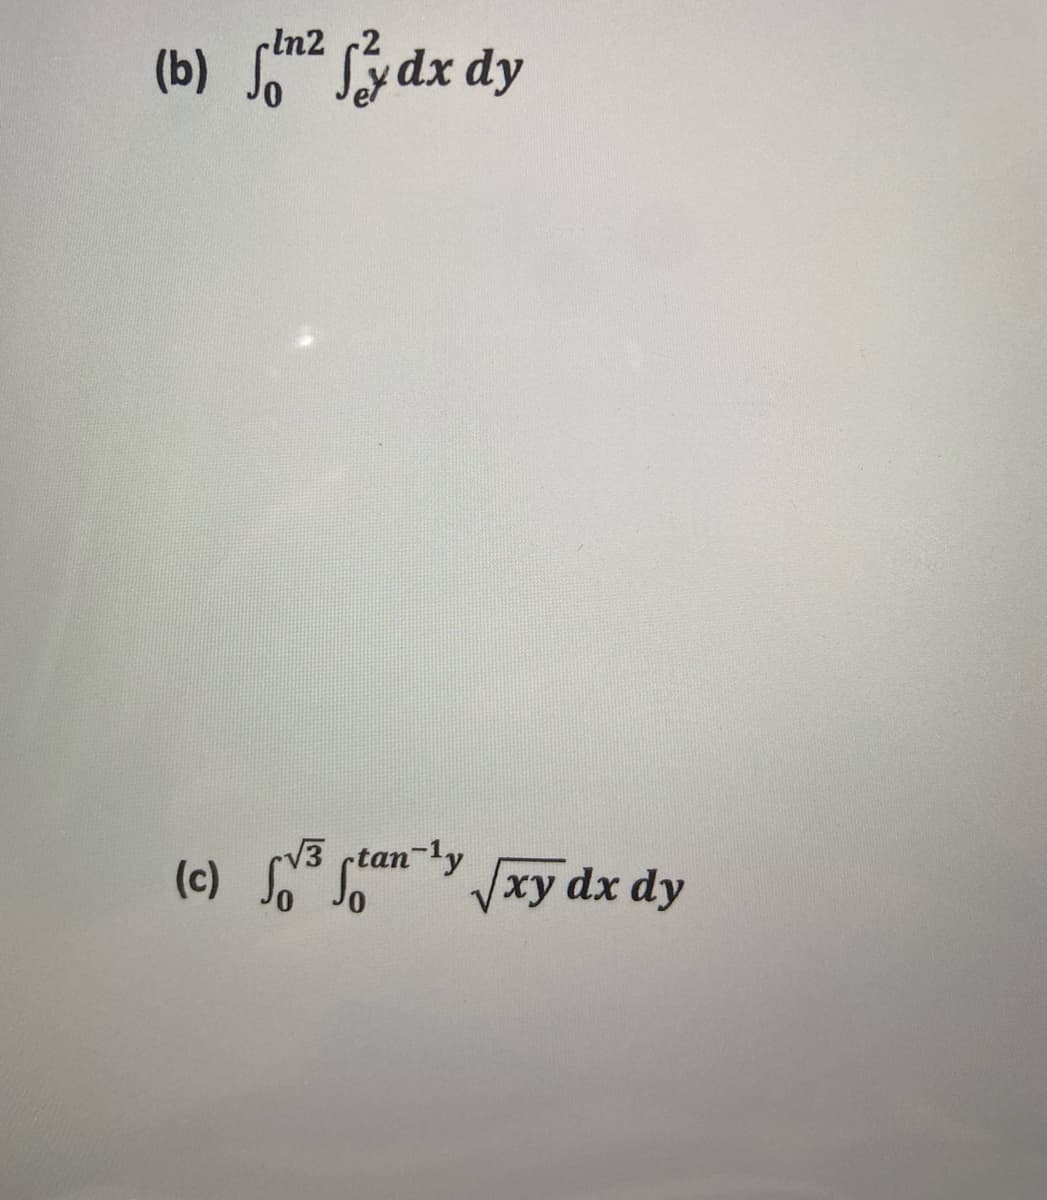 çln2 (2
(b) So Sydx dy
V3 rtan-ly
